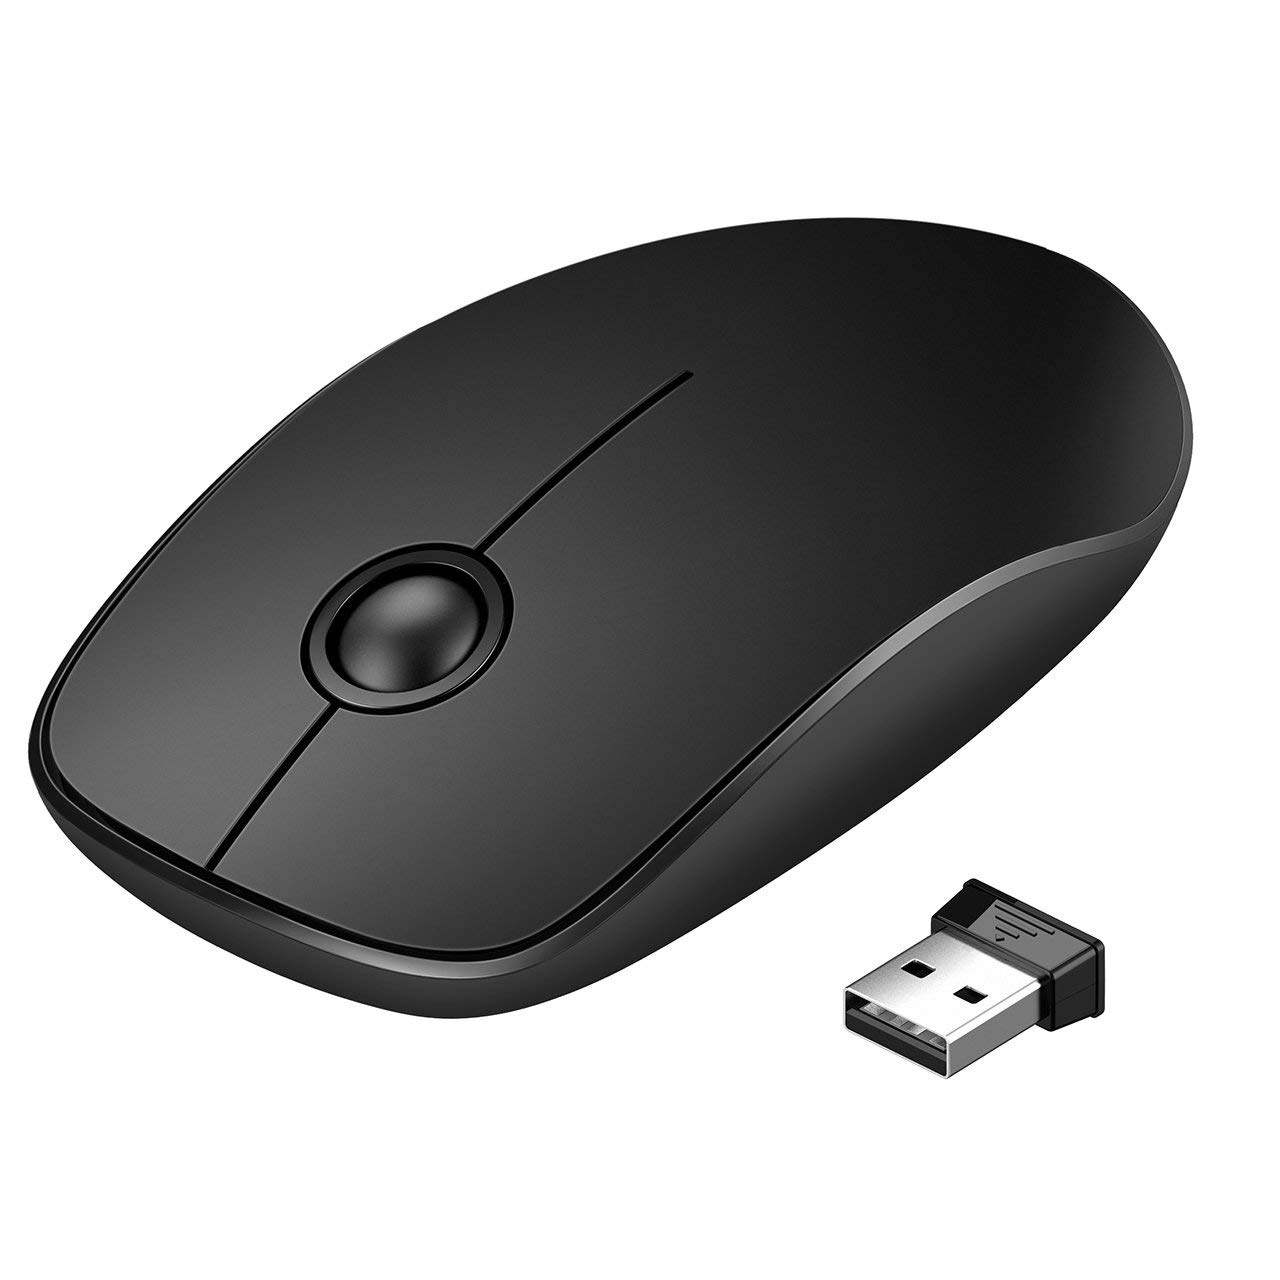 VicTsing 2.4G Slim Mouse Inalambrico con Nano Receiver, Silencioso con 1600 DPI para PC, computadora portátil, tableta, computadora y Mac, Negro